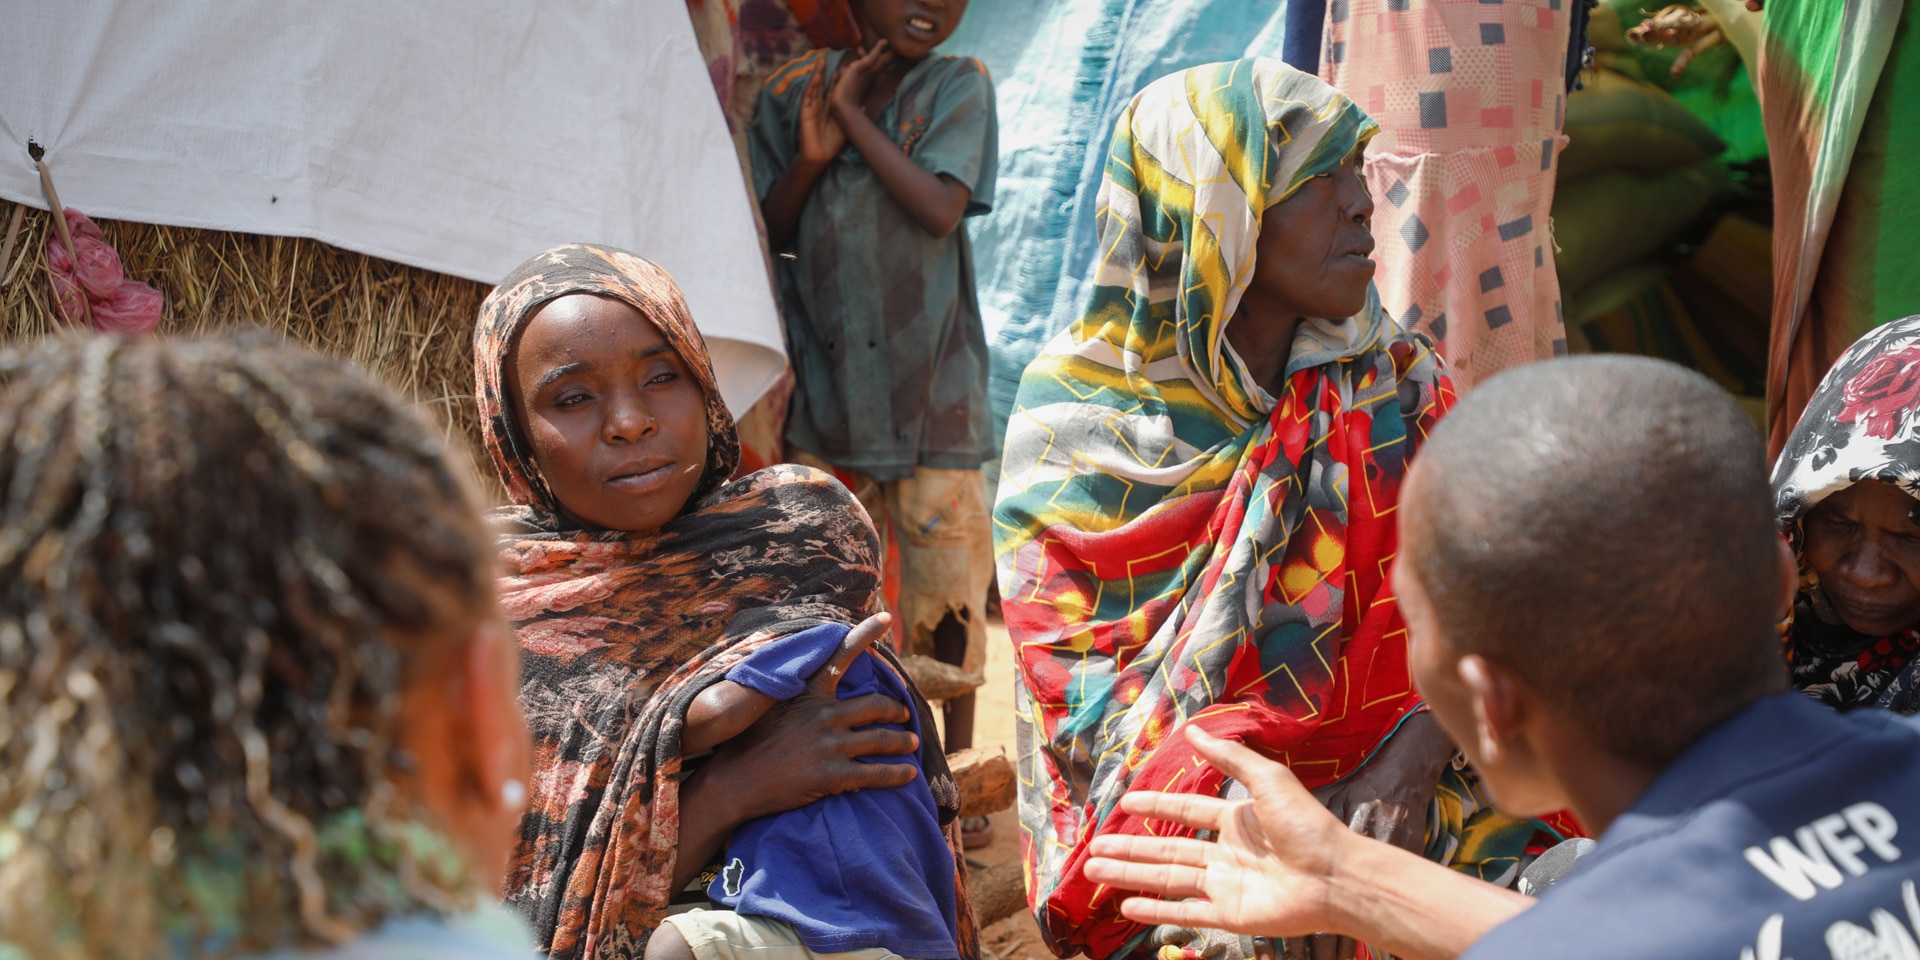 Operatori umanitari, con Patricia Danzi, parlano con donne in abito tradizionale in Ciad.